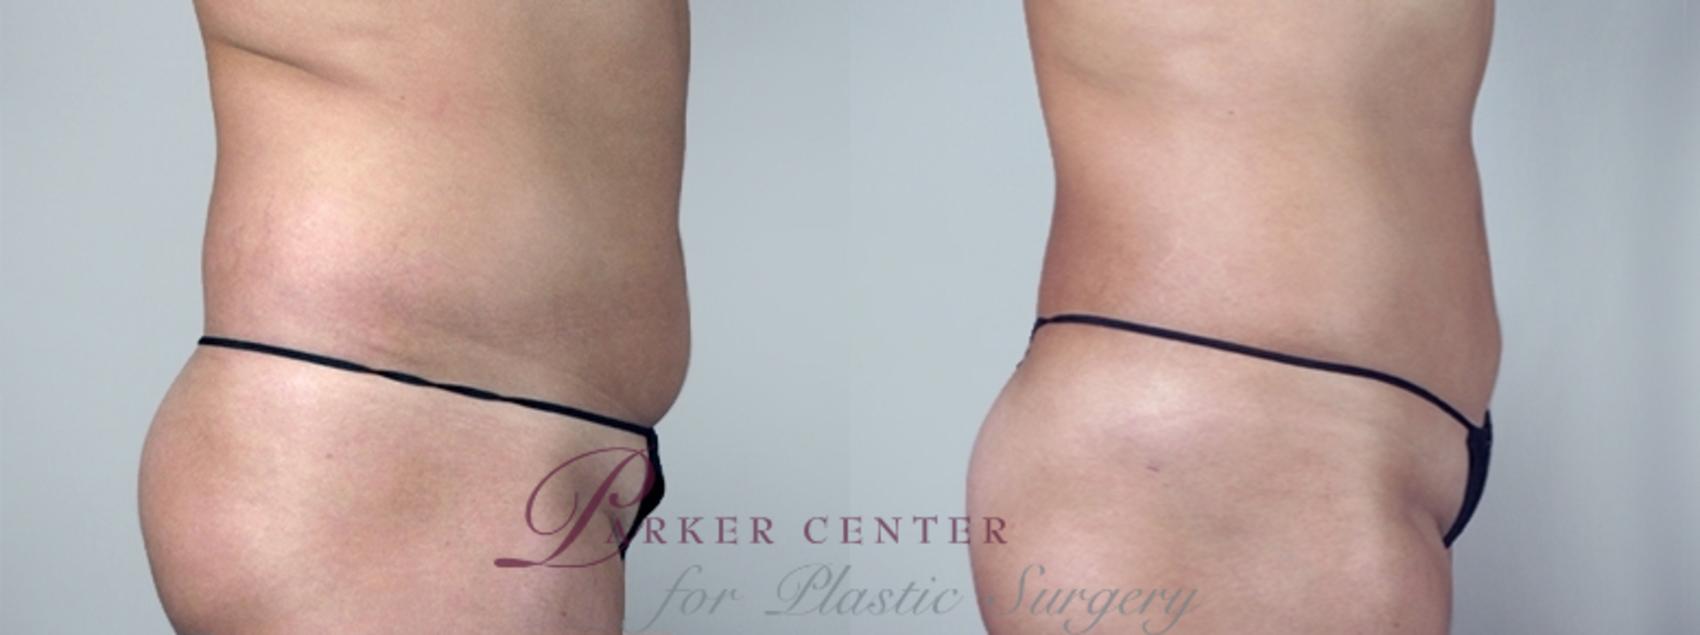 Liposuction Case 962 Before & After View #5 | Paramus, NJ | Parker Center for Plastic Surgery